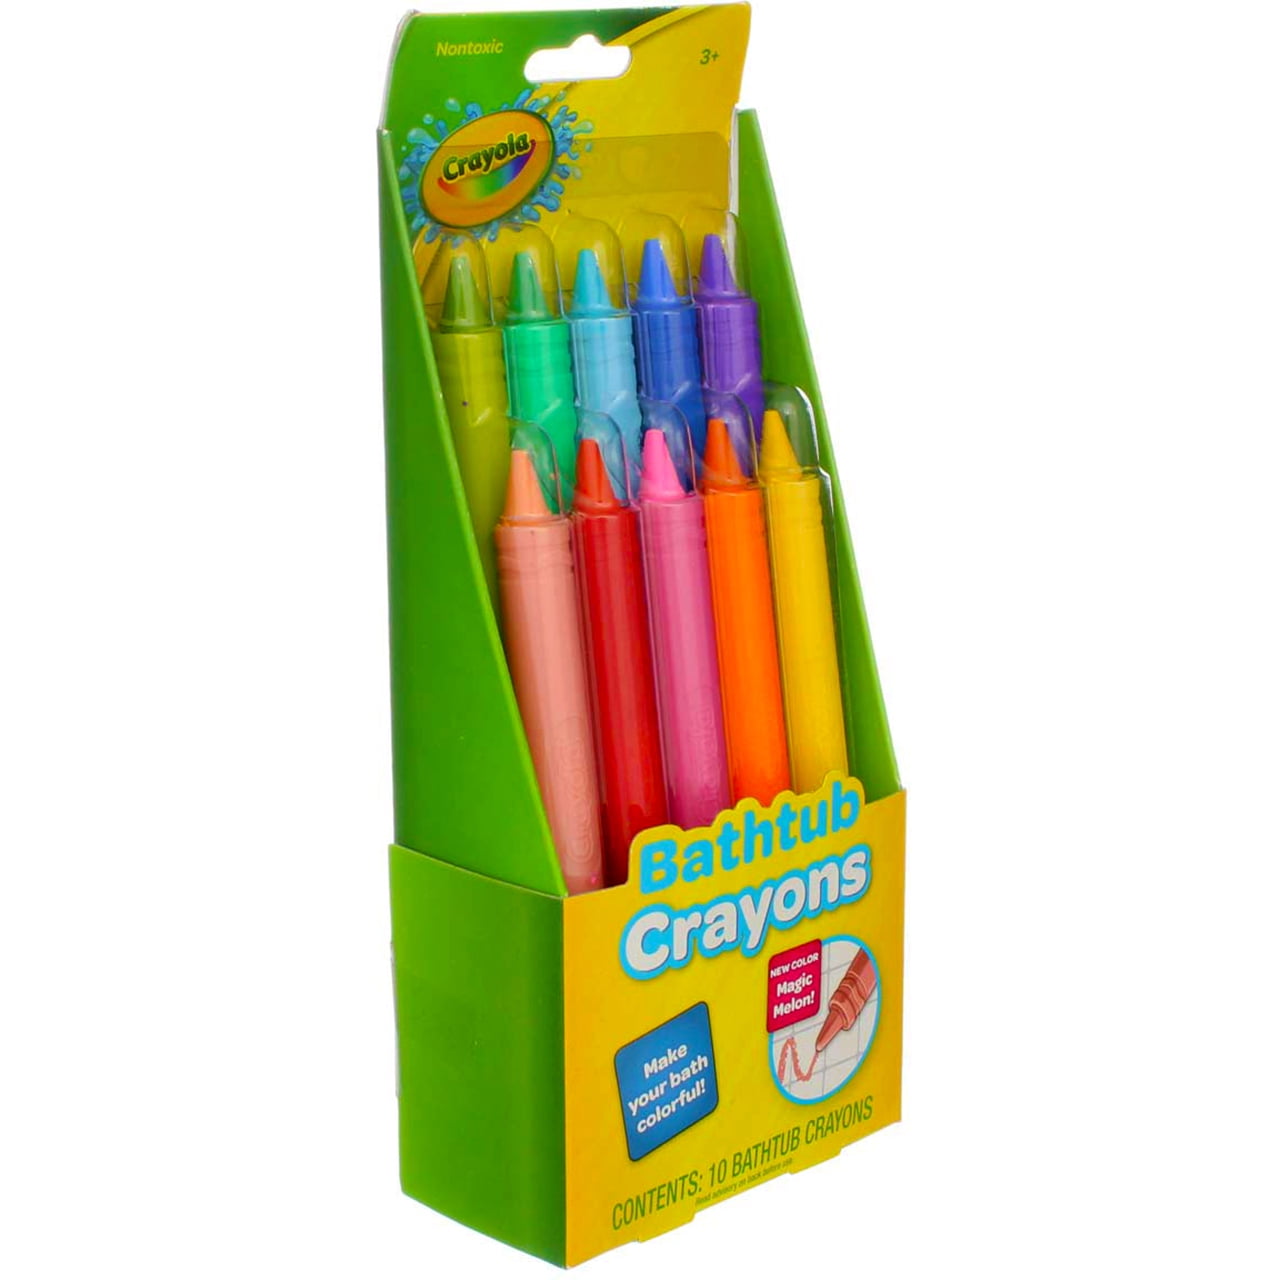 Crayola Bathtub Crayons - 9 count